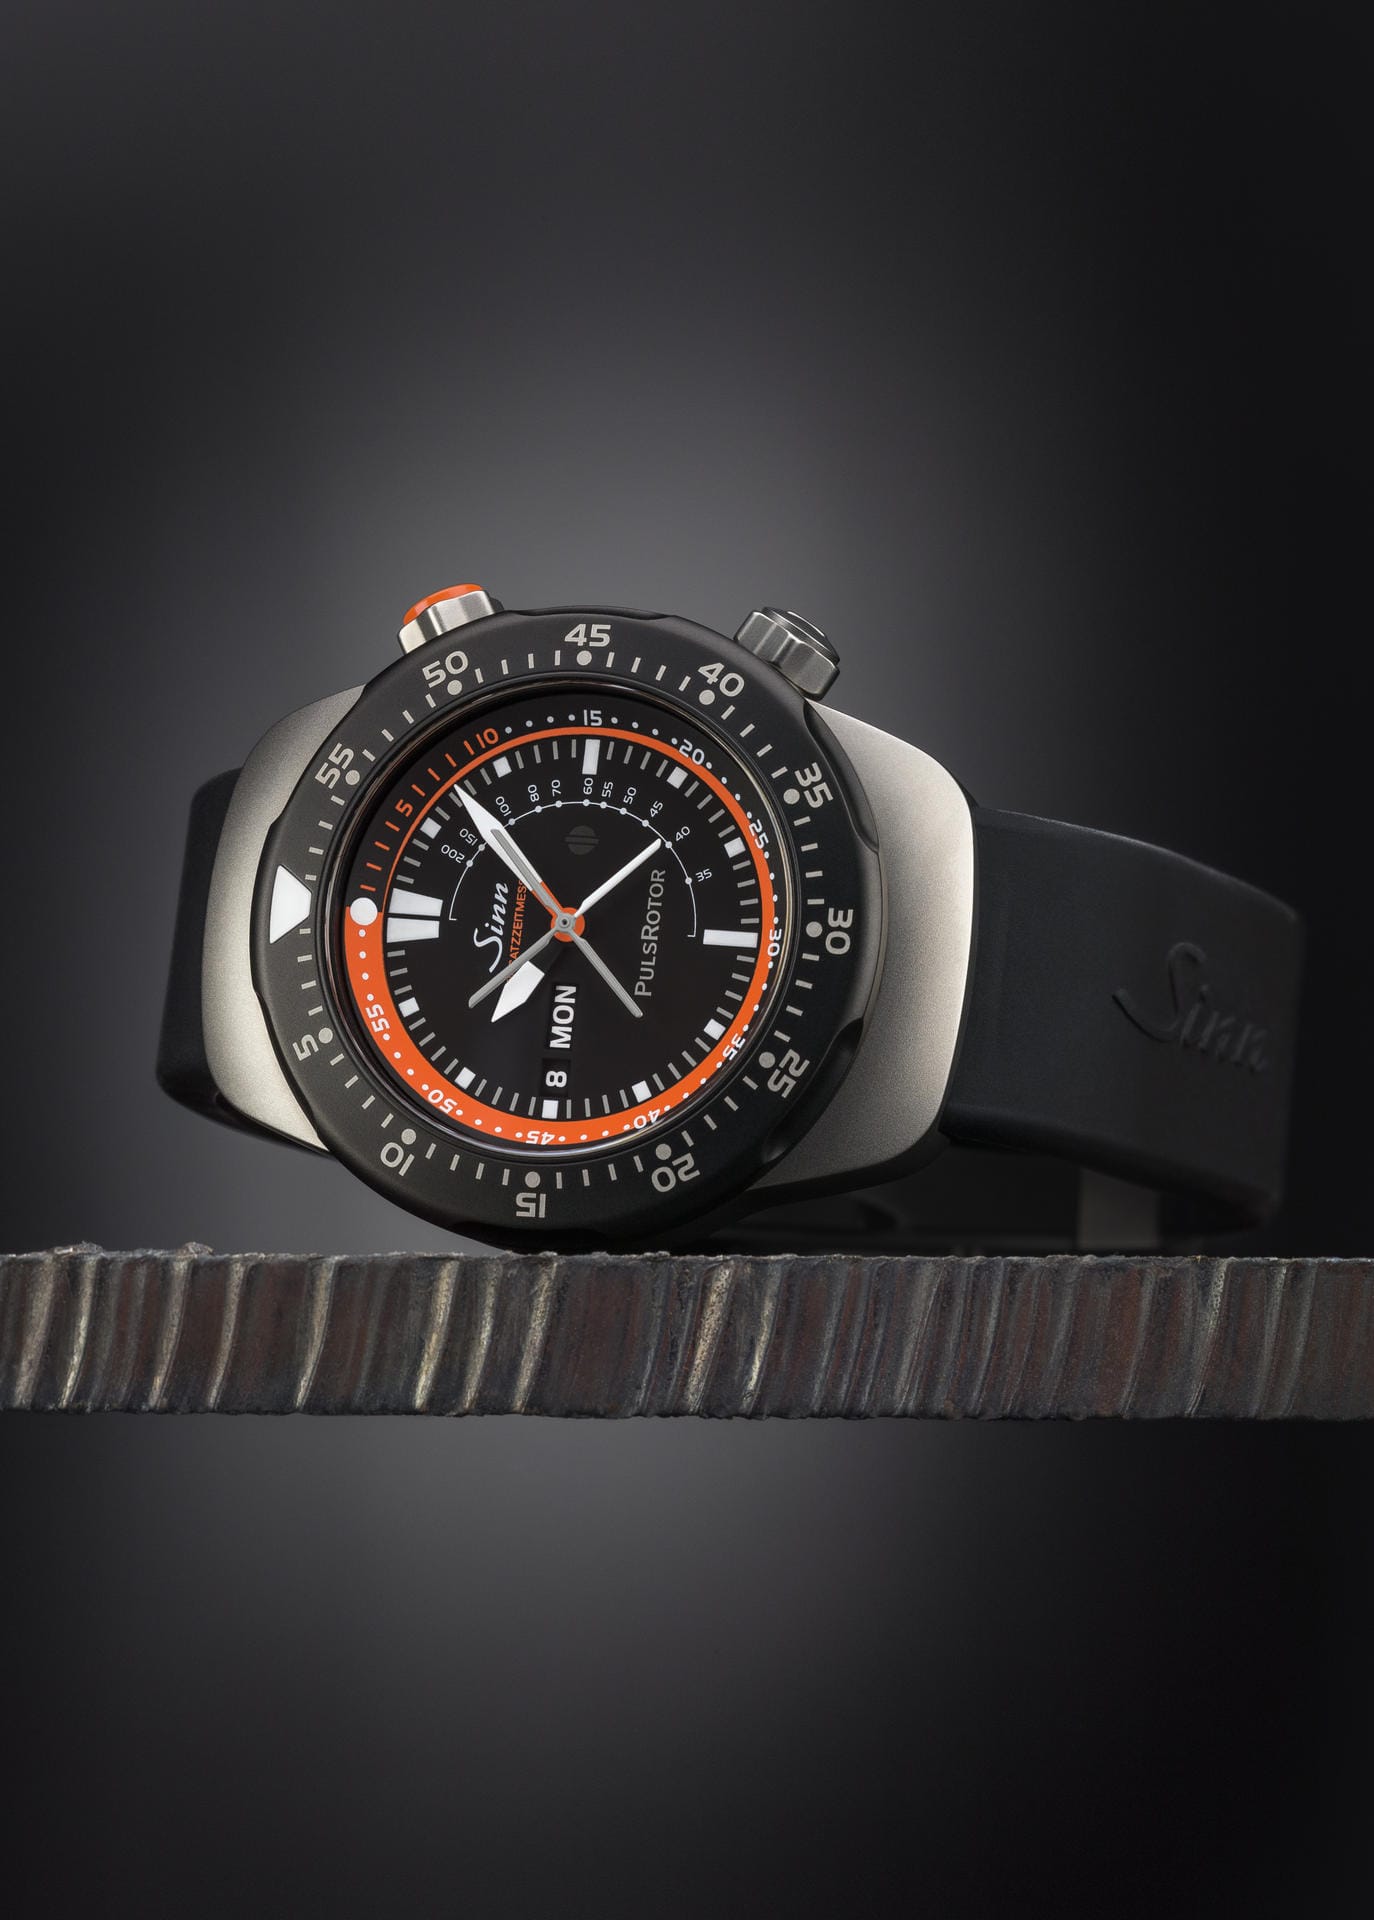 Der Frankfurter Uhrenbauer Sinn ist für seine besonderen Einsatzuhren bekannt. In Basel zeigt der Hersteller den Einsatzzeitmesser 12, der für den Luftrettungsdienst entwickelt wurde.